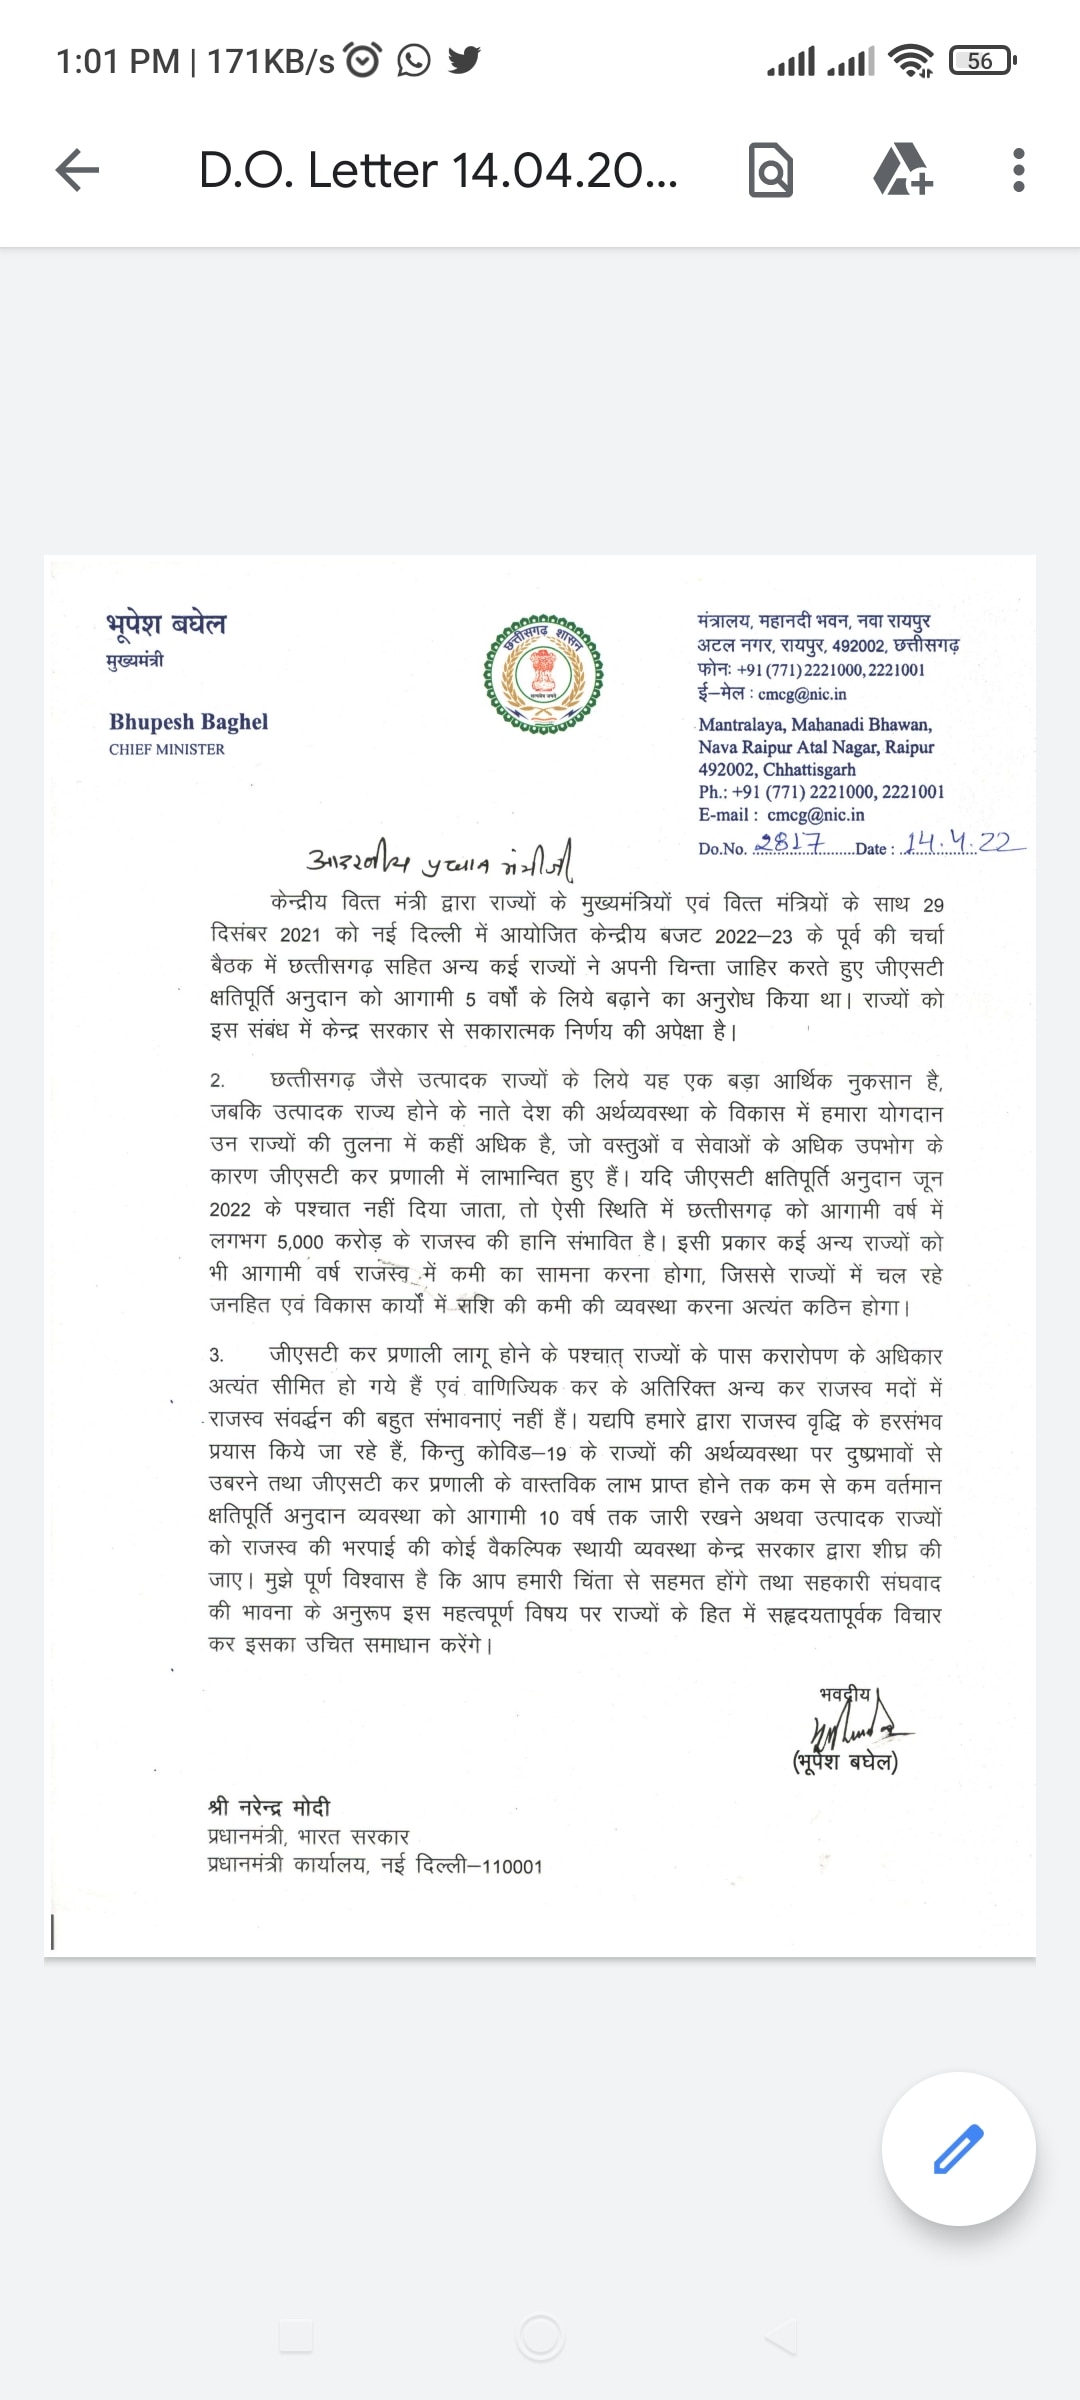 Chhattisgarh News: सीएम भूपेश बघेल का दो दिन में दूसरी बार पीएम मोदी को पत्र, की ये बड़ी मांग